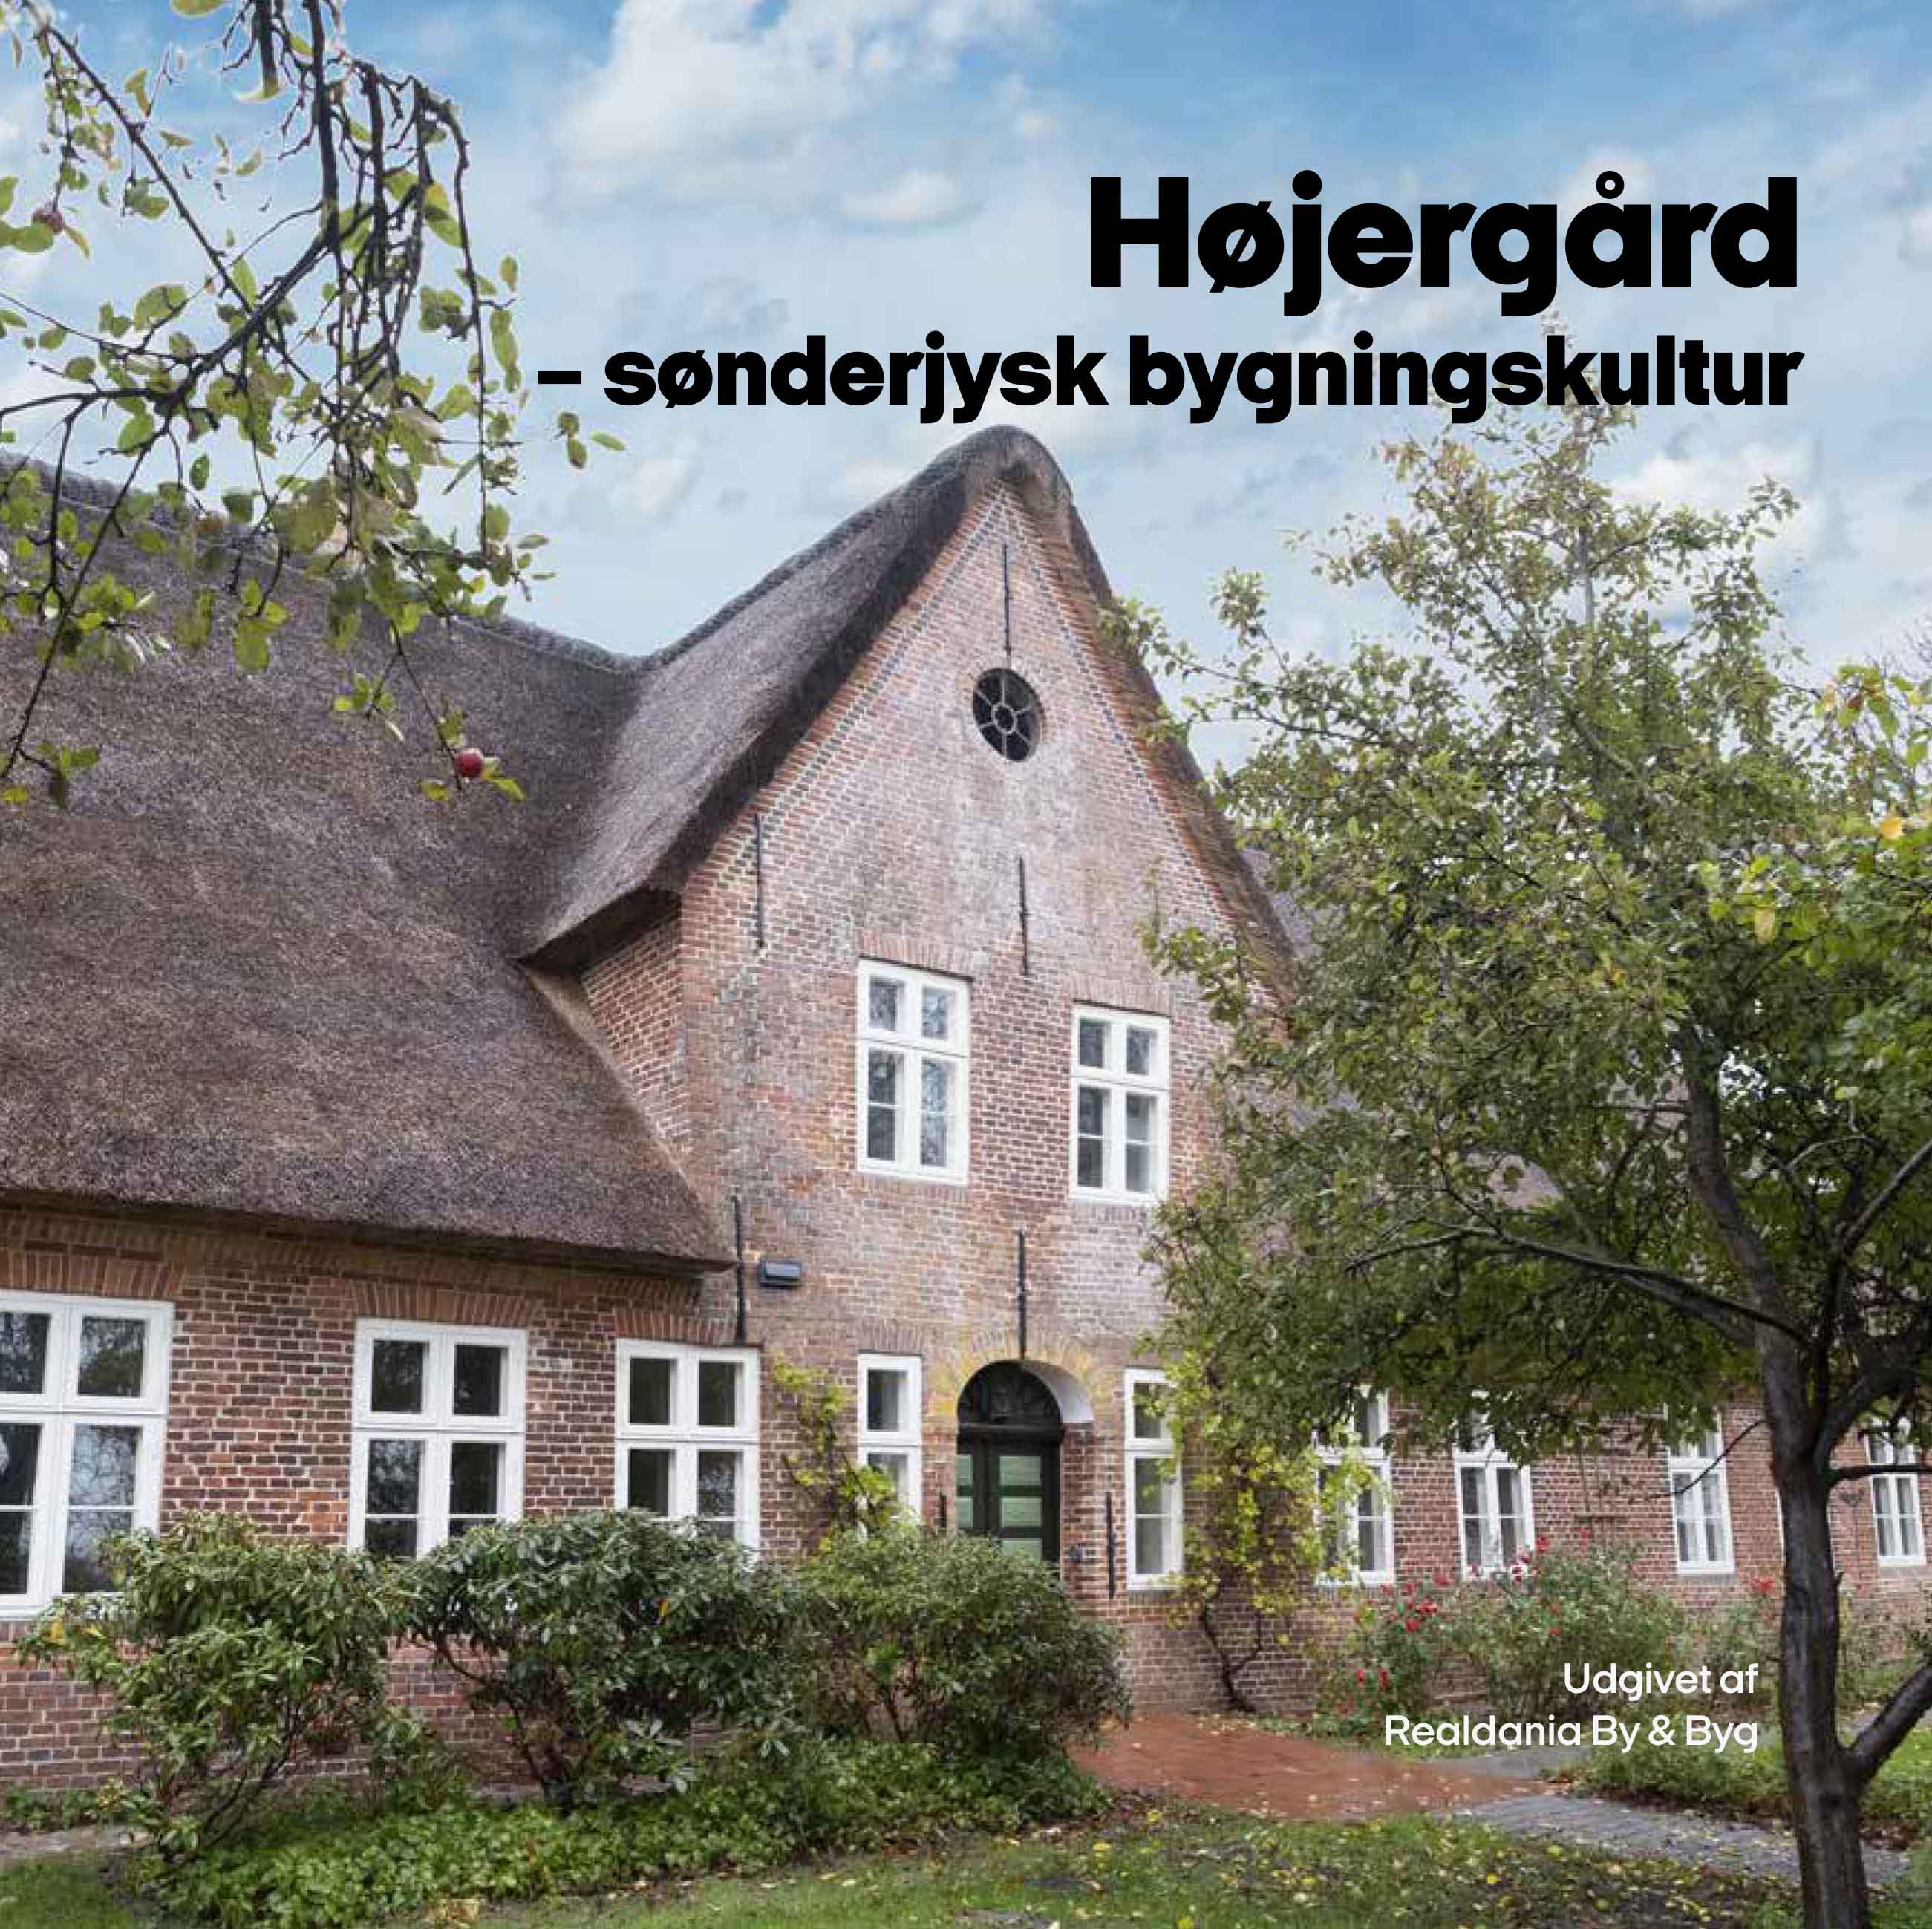 Højergaard - sønderjysk bygningskultur